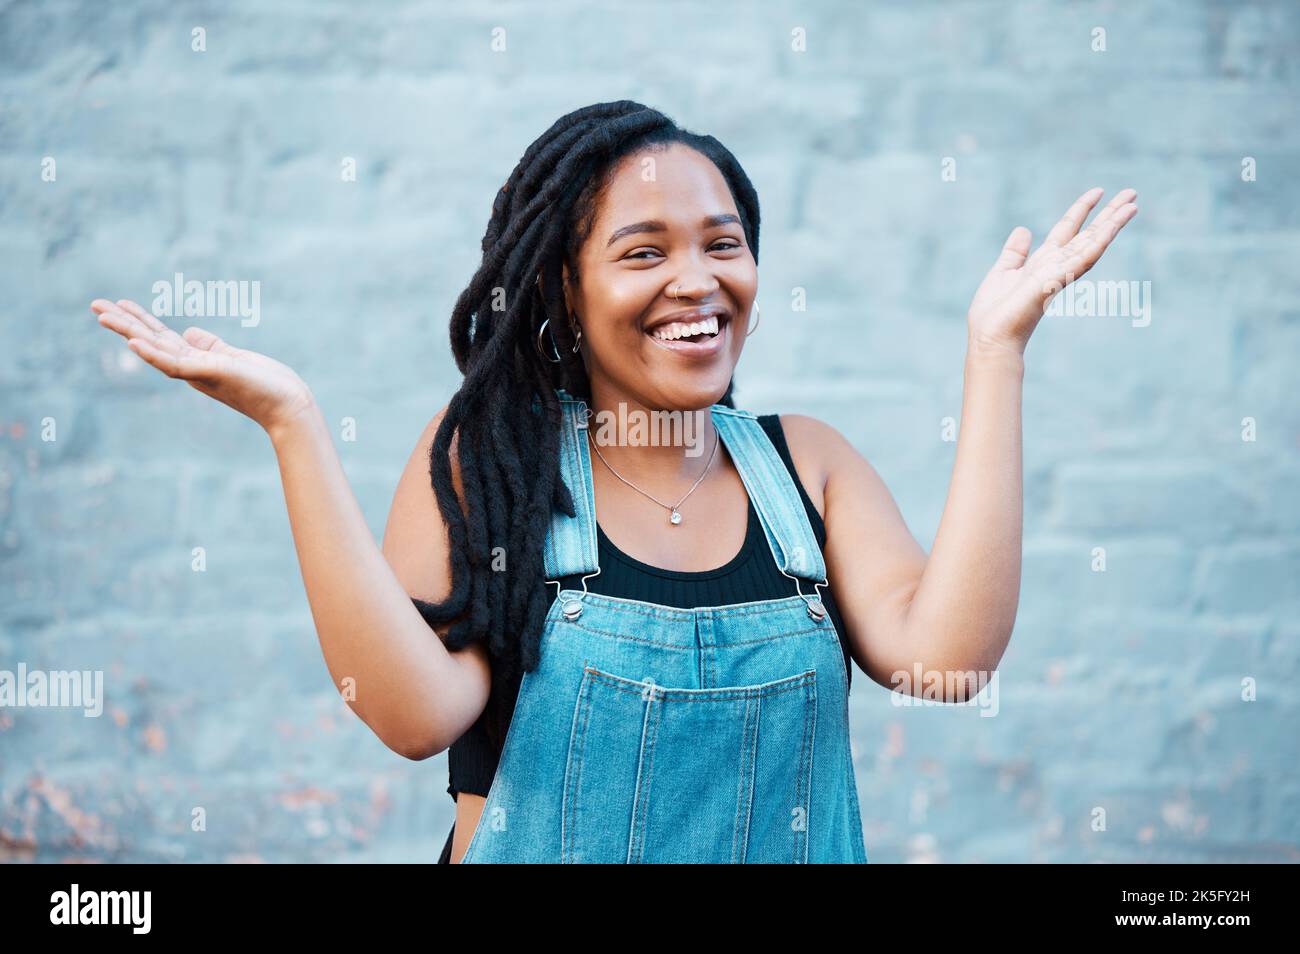 Schwarze Frau, Lächeln und Hände für verwirrte oder unsichere Geste, die draußen vor städtischem Hintergrund auf der Straße gegen die blaue Wand posiert. Lachende Frau Stockfoto